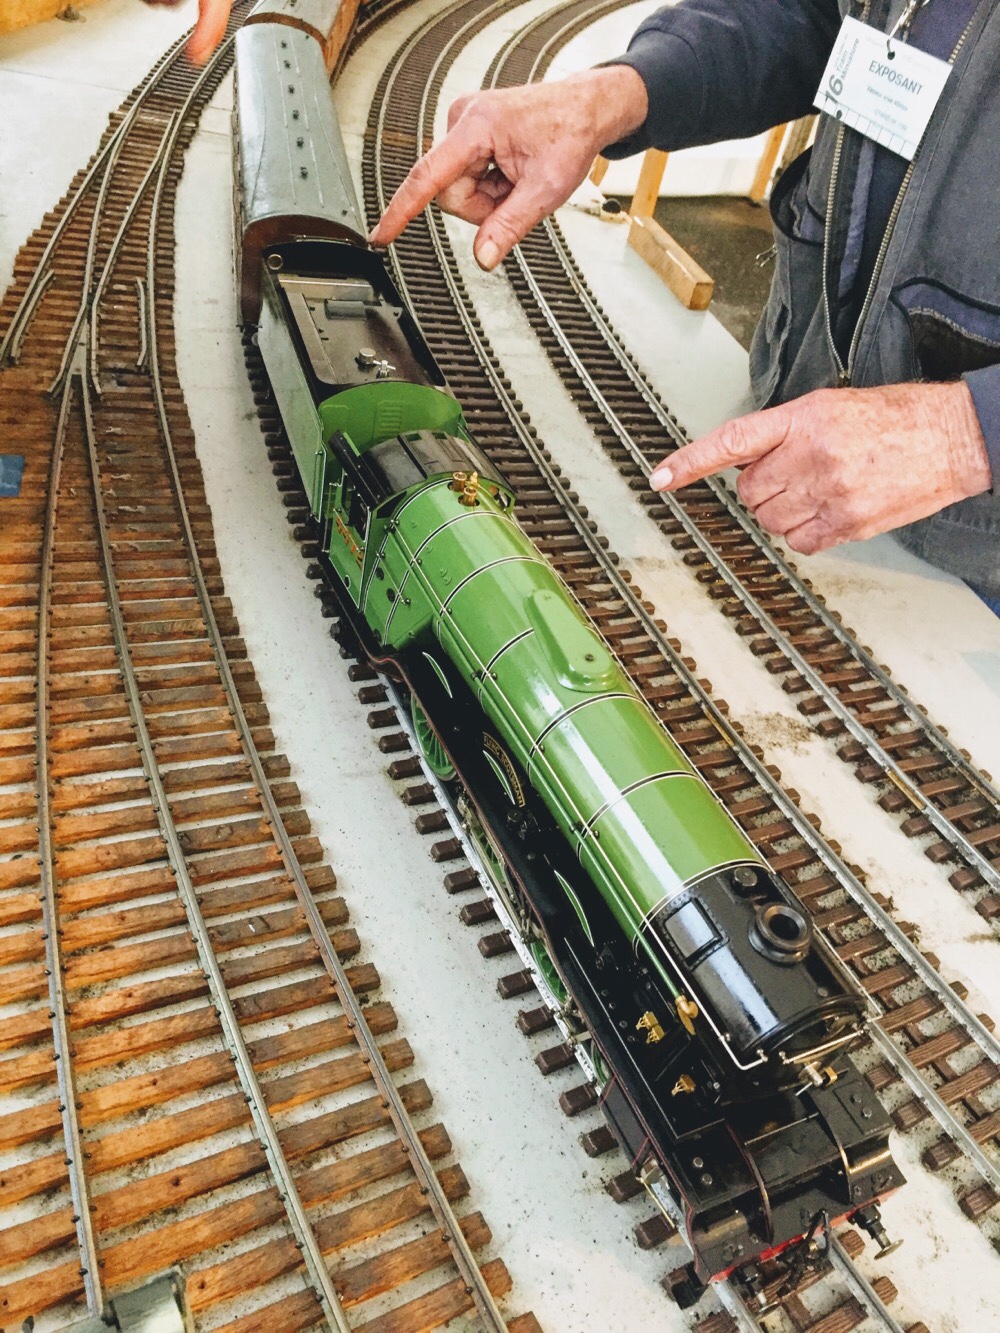 Le spécialiste du train miniature en France